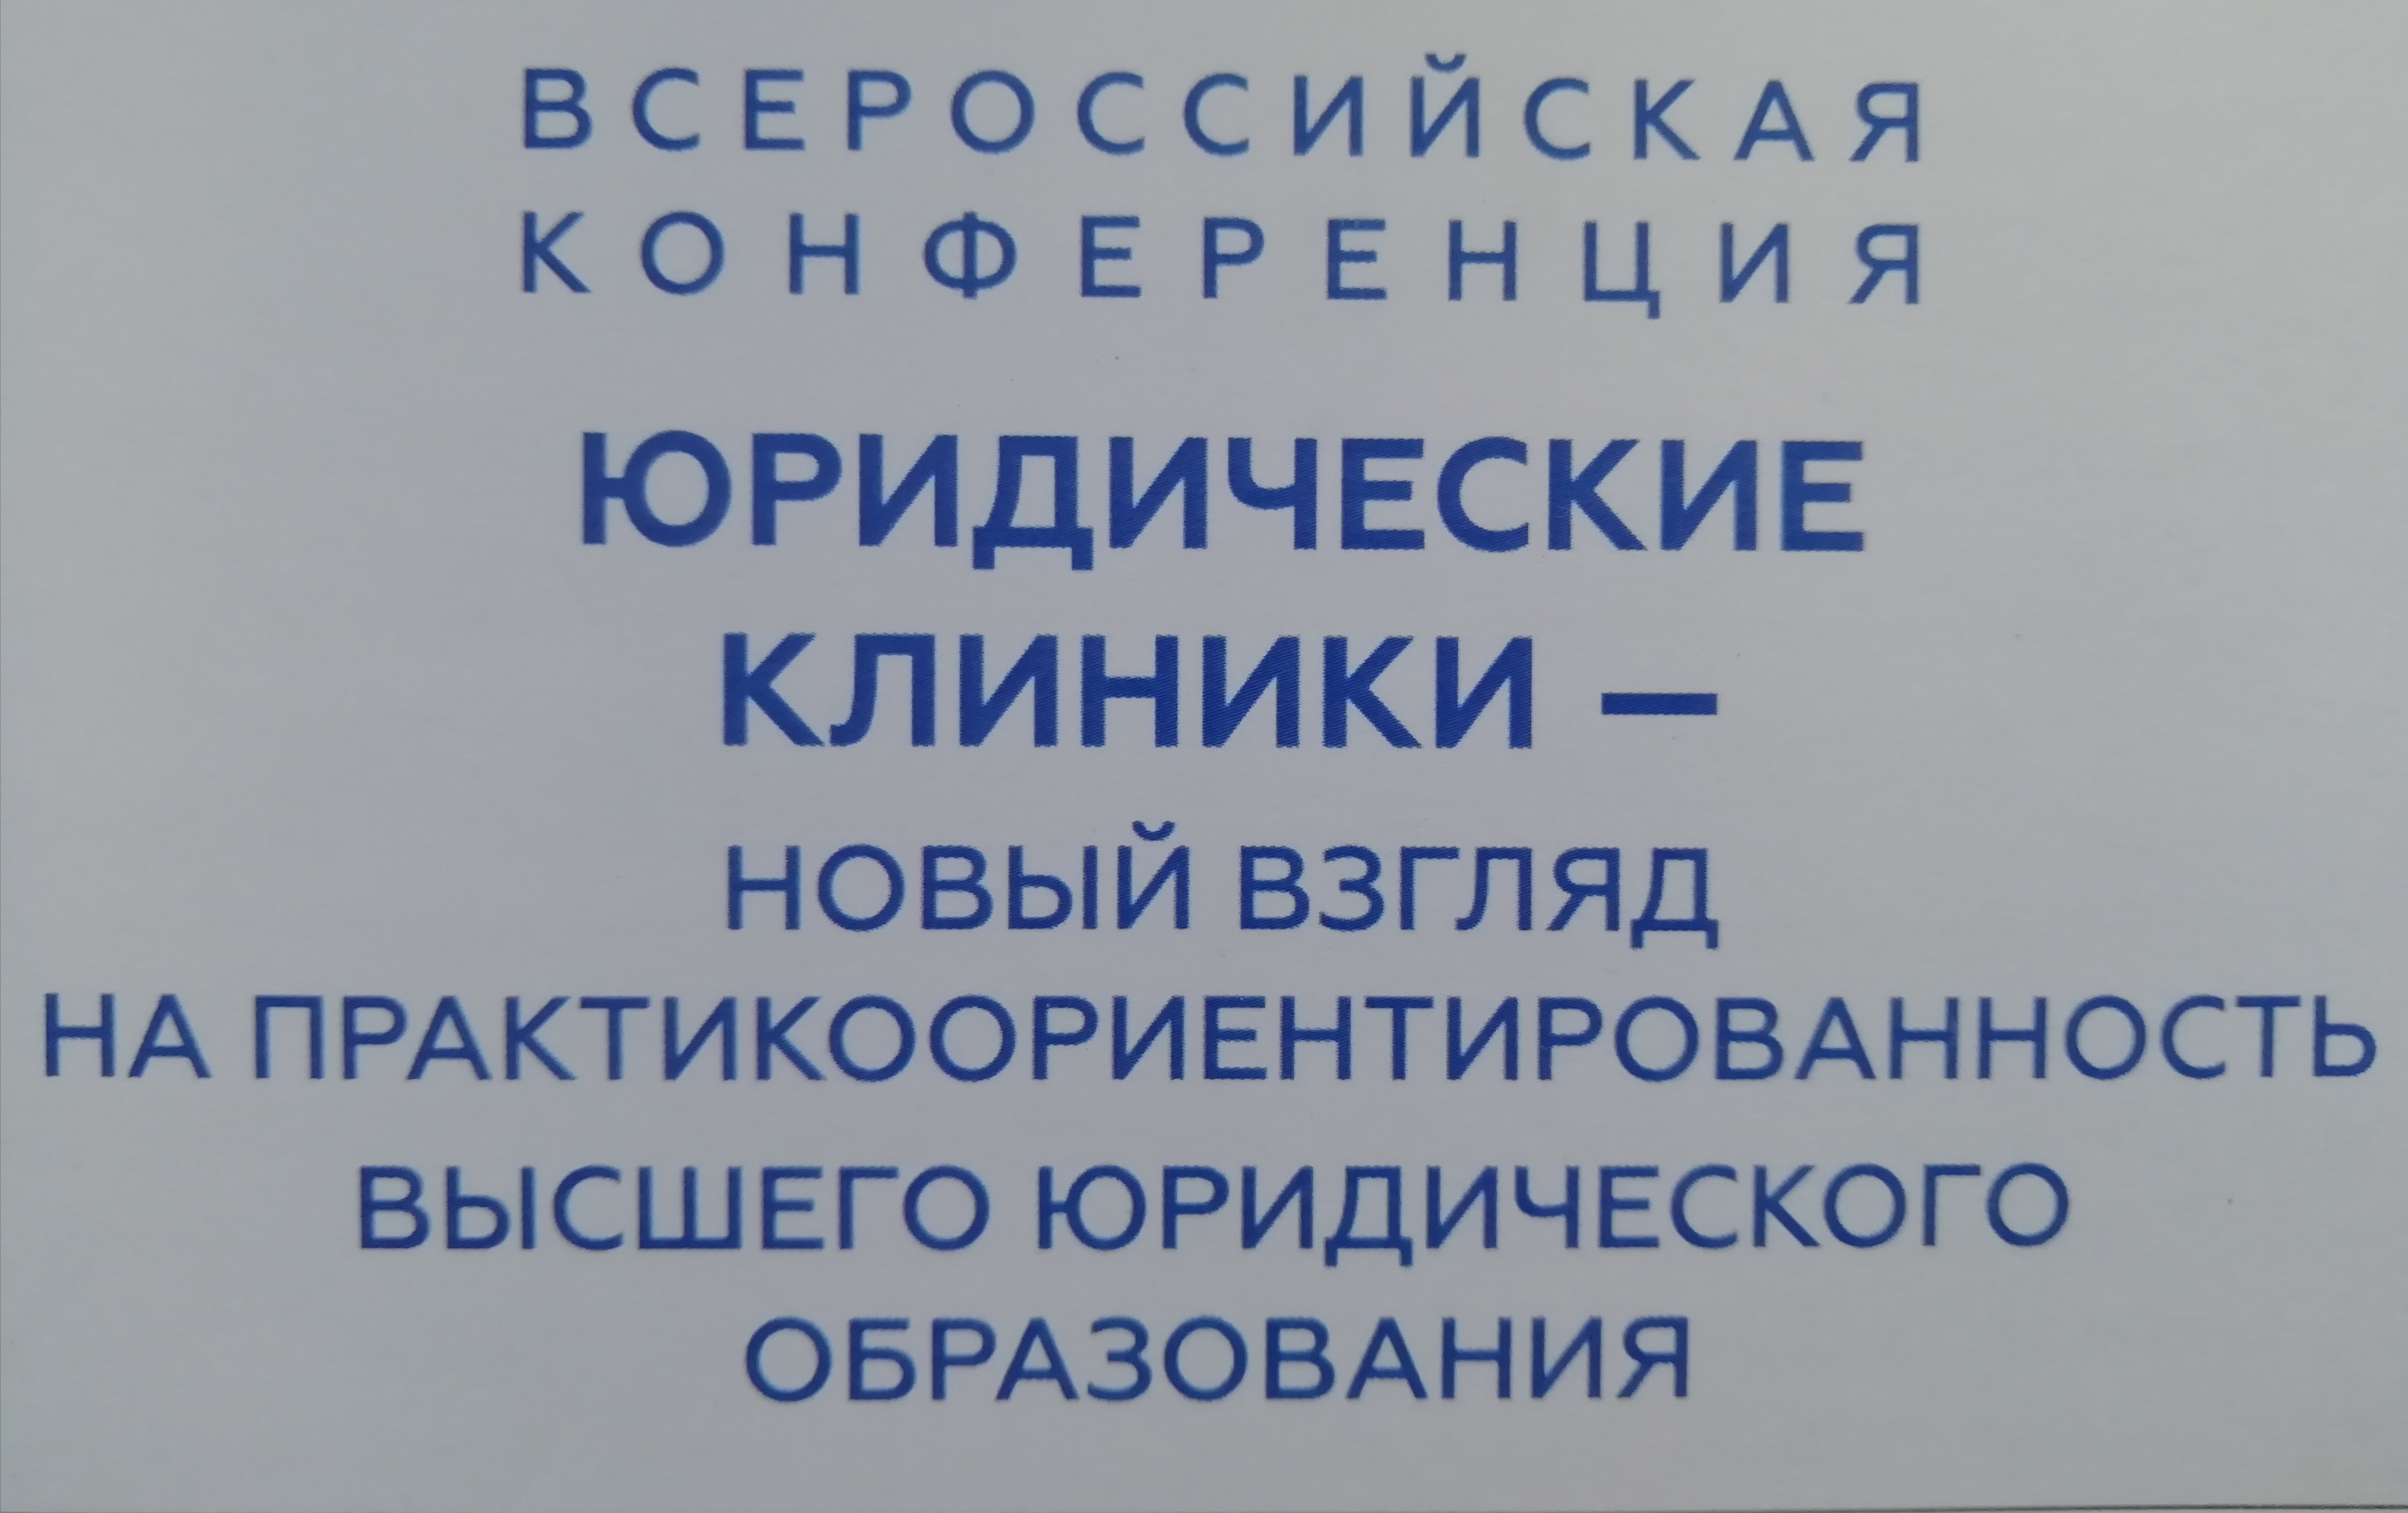  изображение для новости В Москве состоялась конференция «Юридические клиники — новый взгляд на практикоориентированность высшего юридического образования».